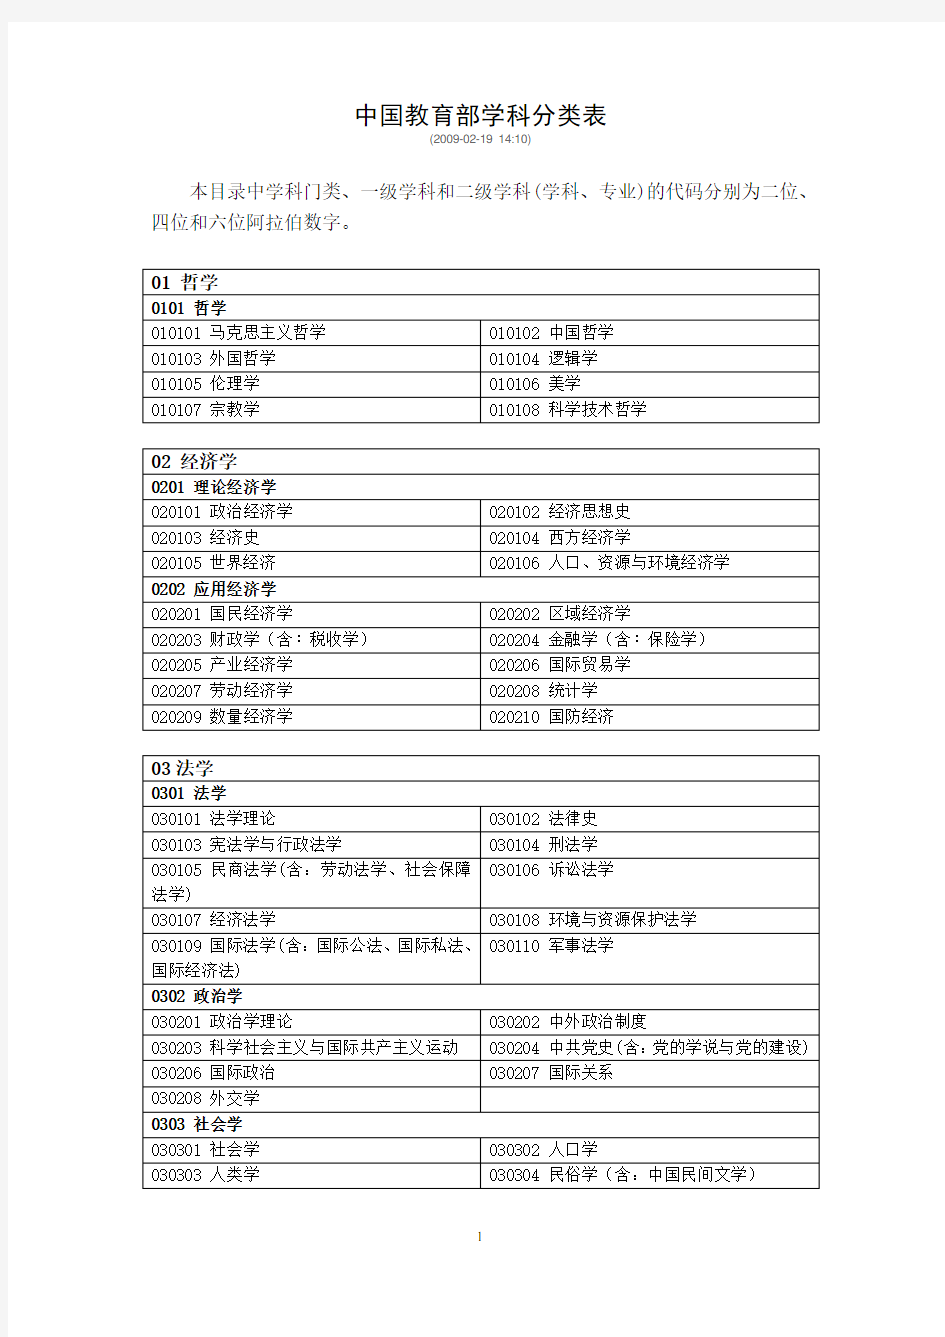 中国教育部学科分类表